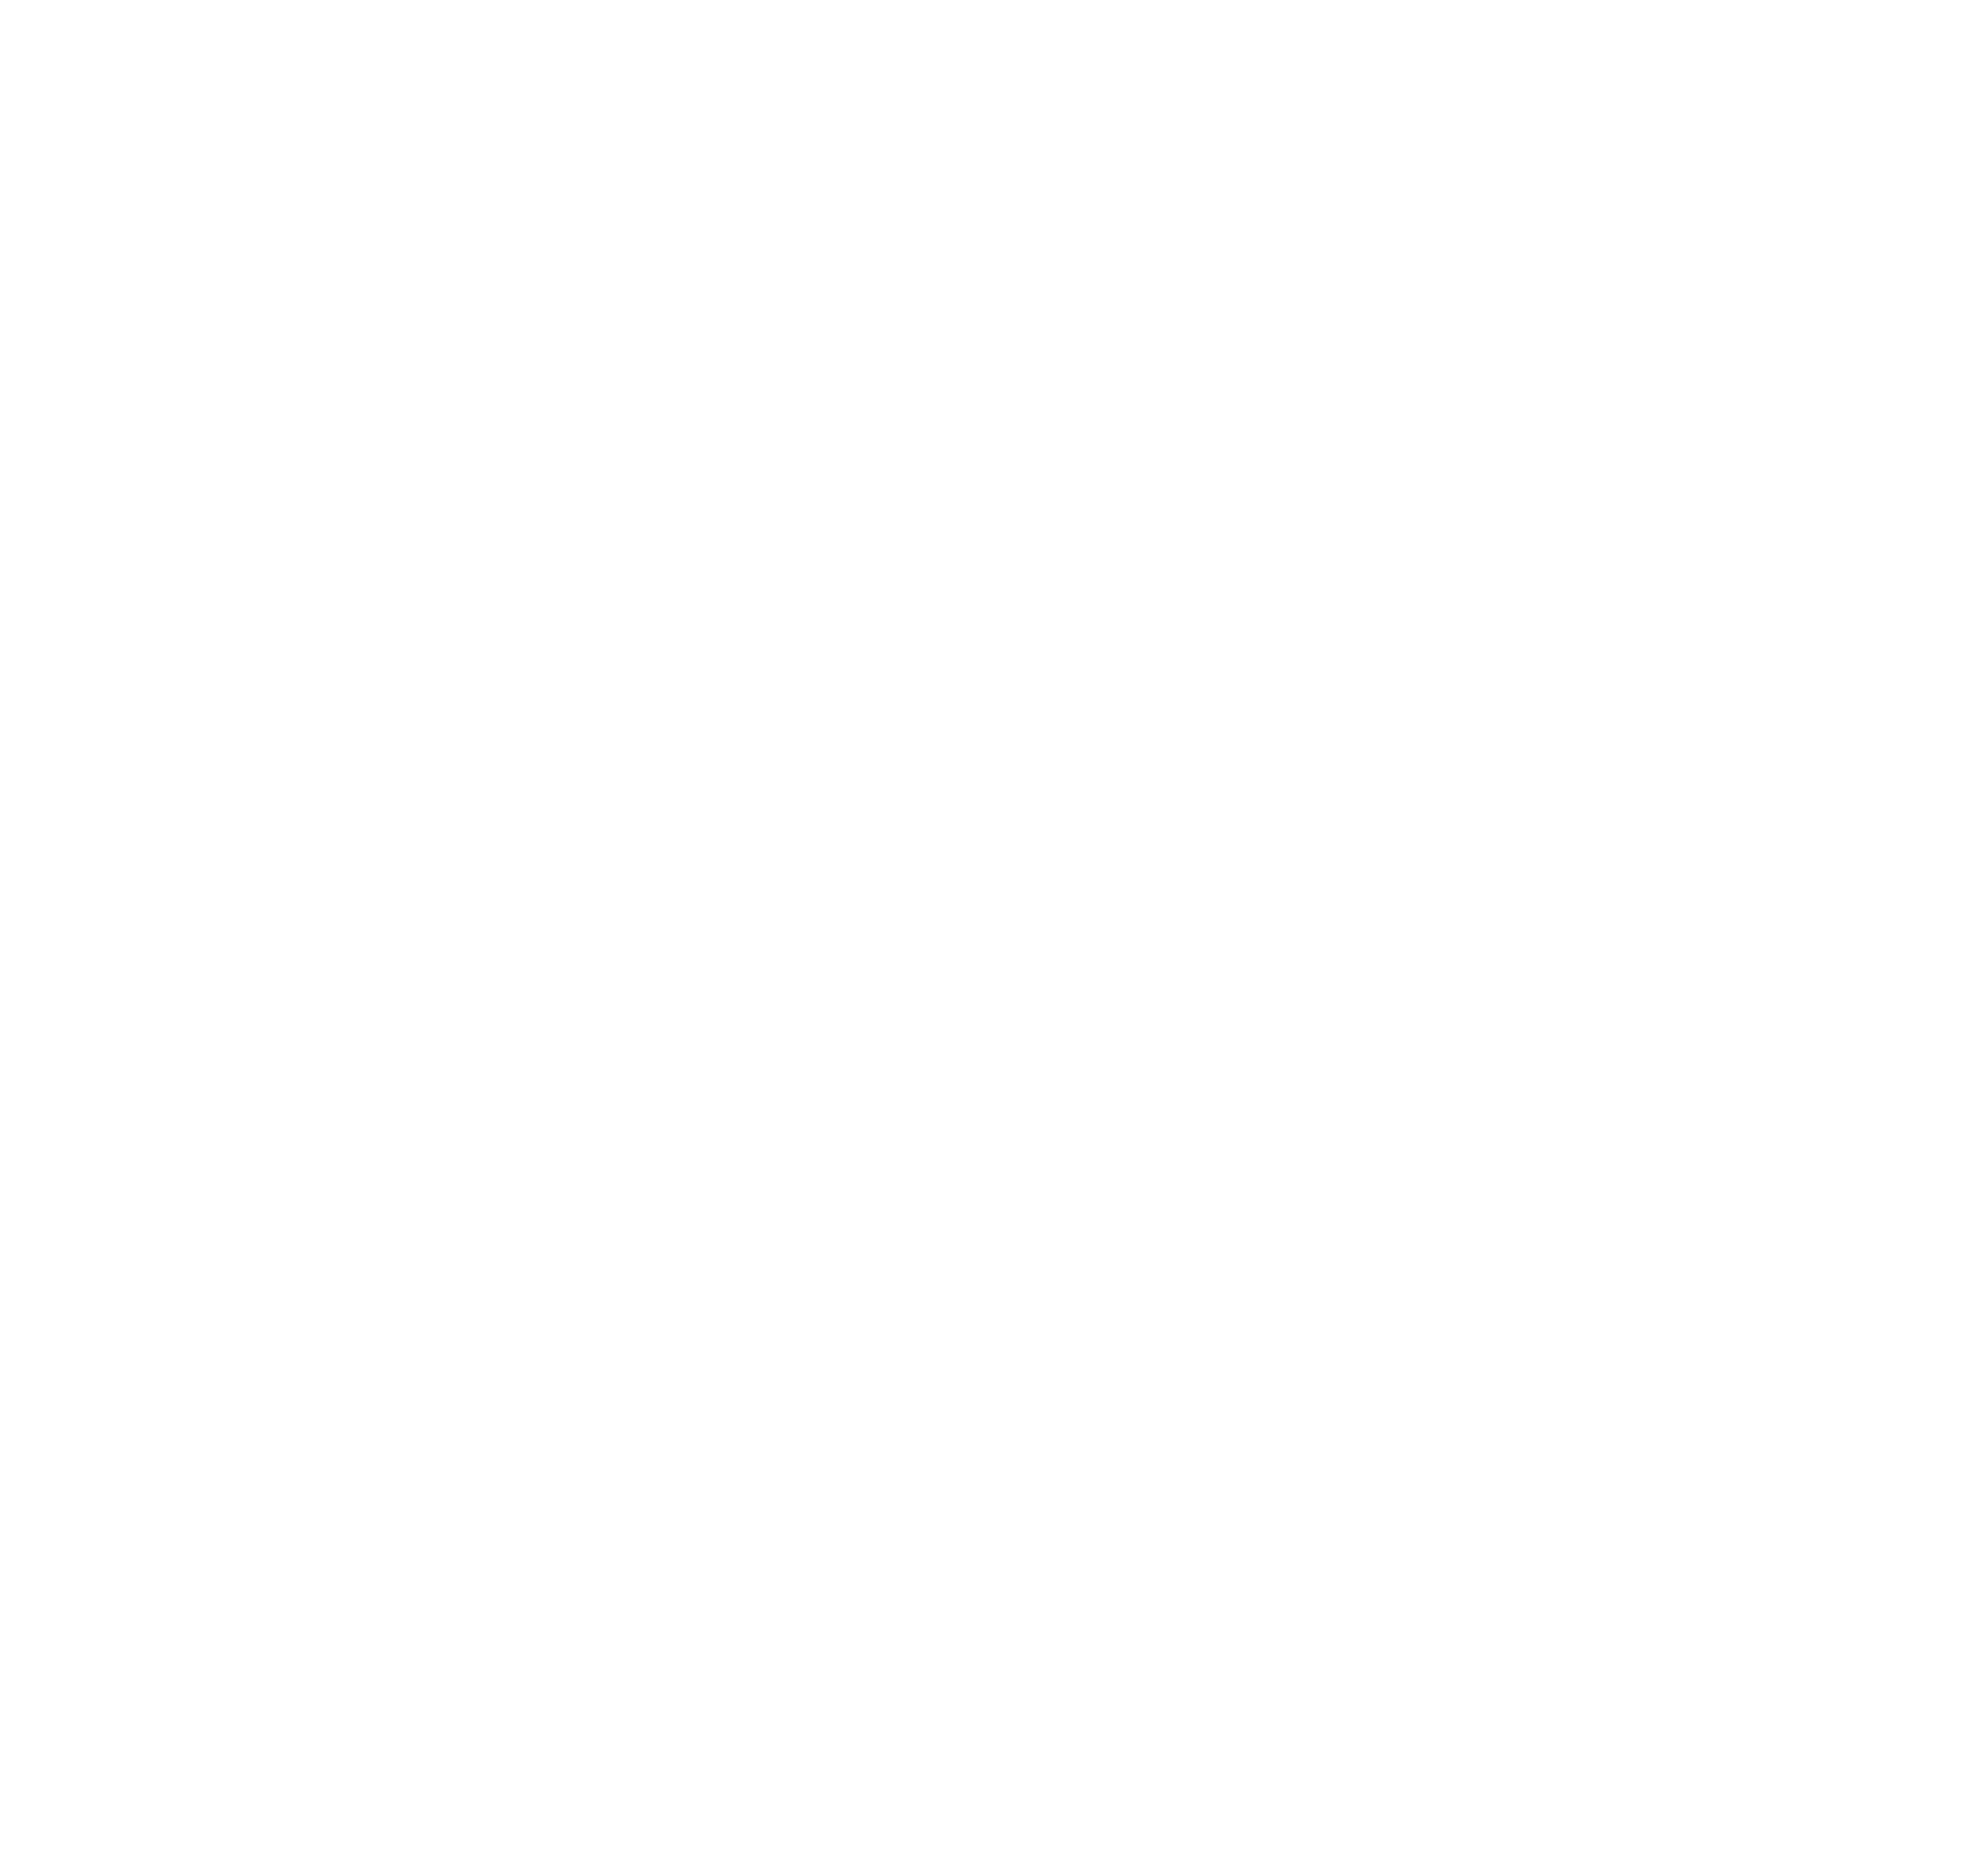 Diana Rybina